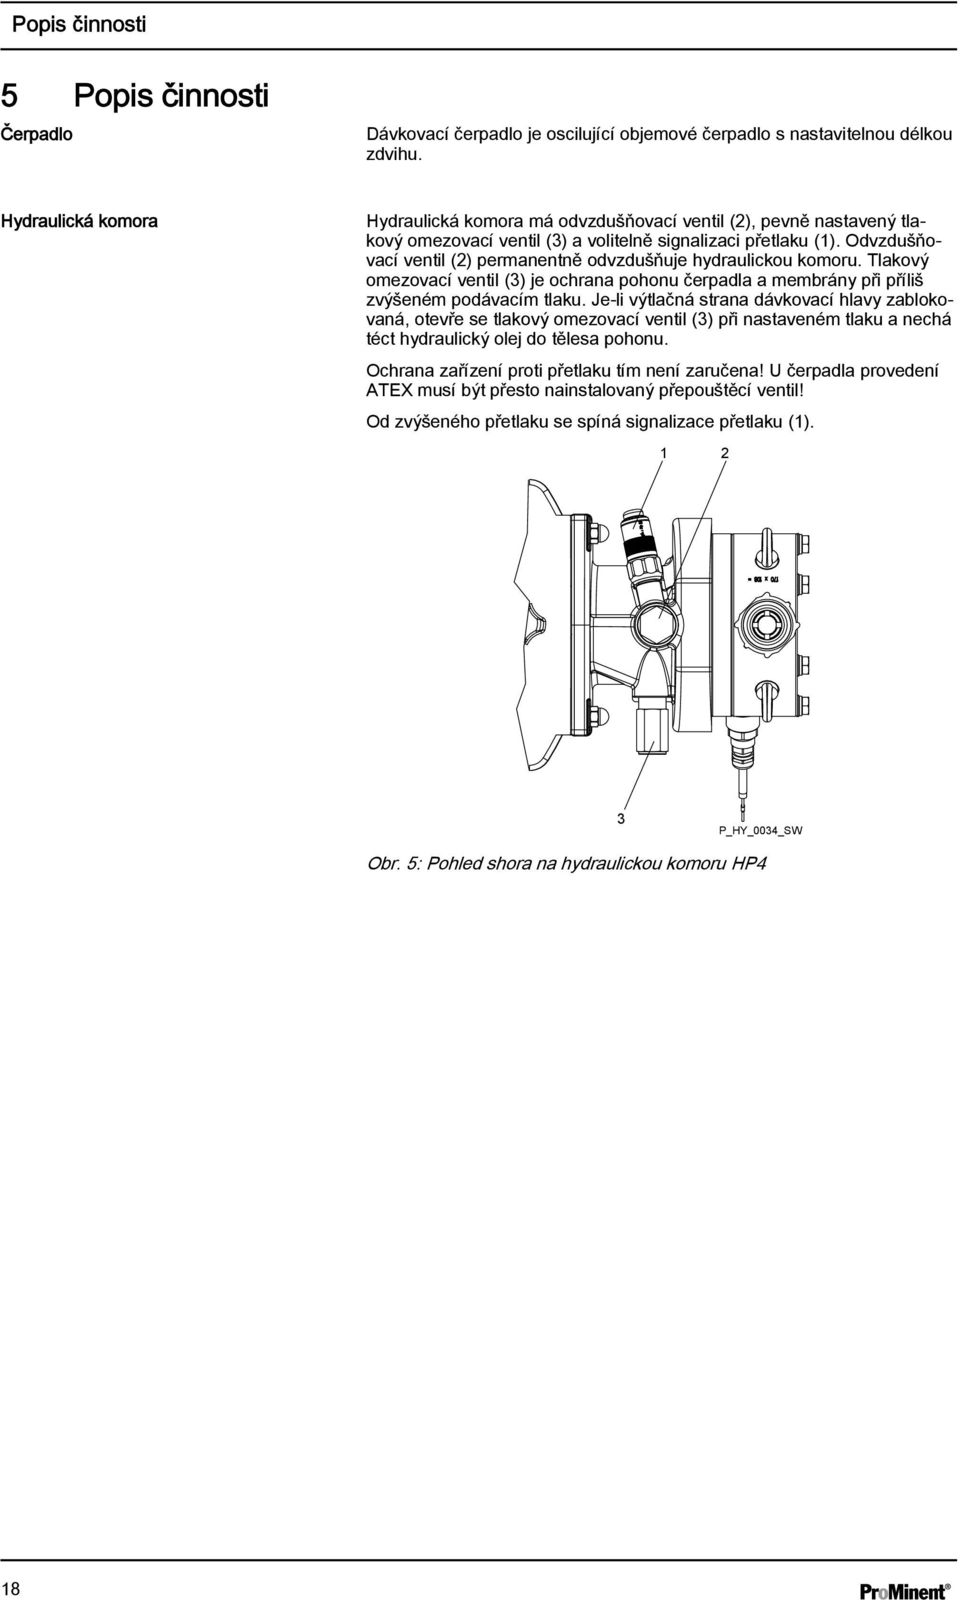 Odvzdušňovací ventil (2) permanentně odvzdušňuje hydraulickou komoru. Tlakový omezovací ventil (3) je ochrana pohonu čerpadla a membrány při příliš zvýšeném podávacím tlaku.